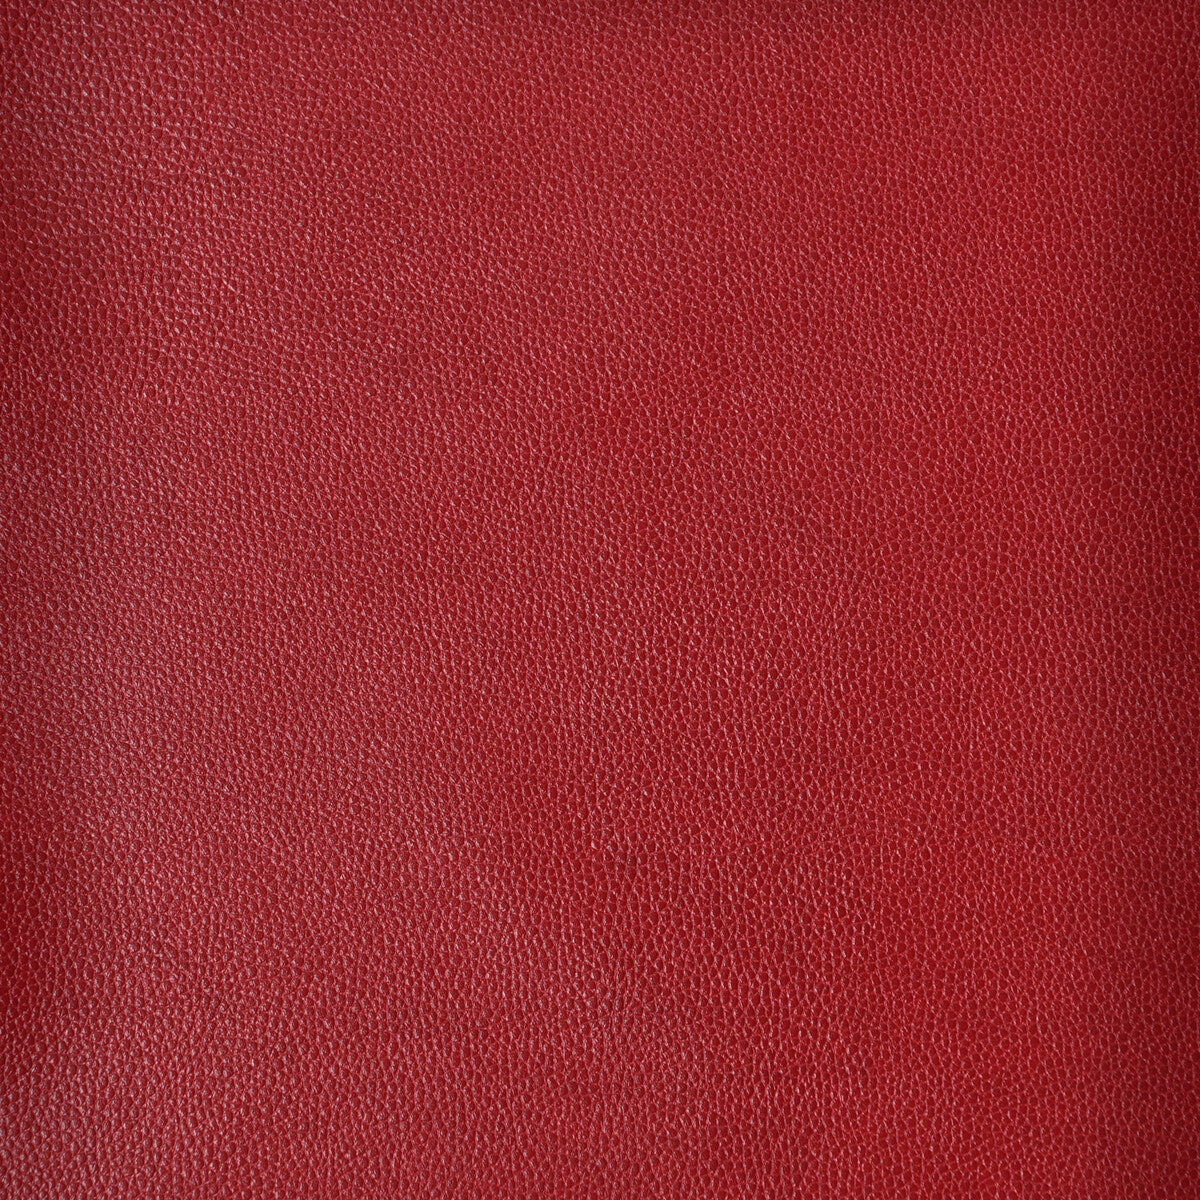 Kravet Design fabric in sparta-19 color - pattern SPARTA.19.0 - by Kravet Design